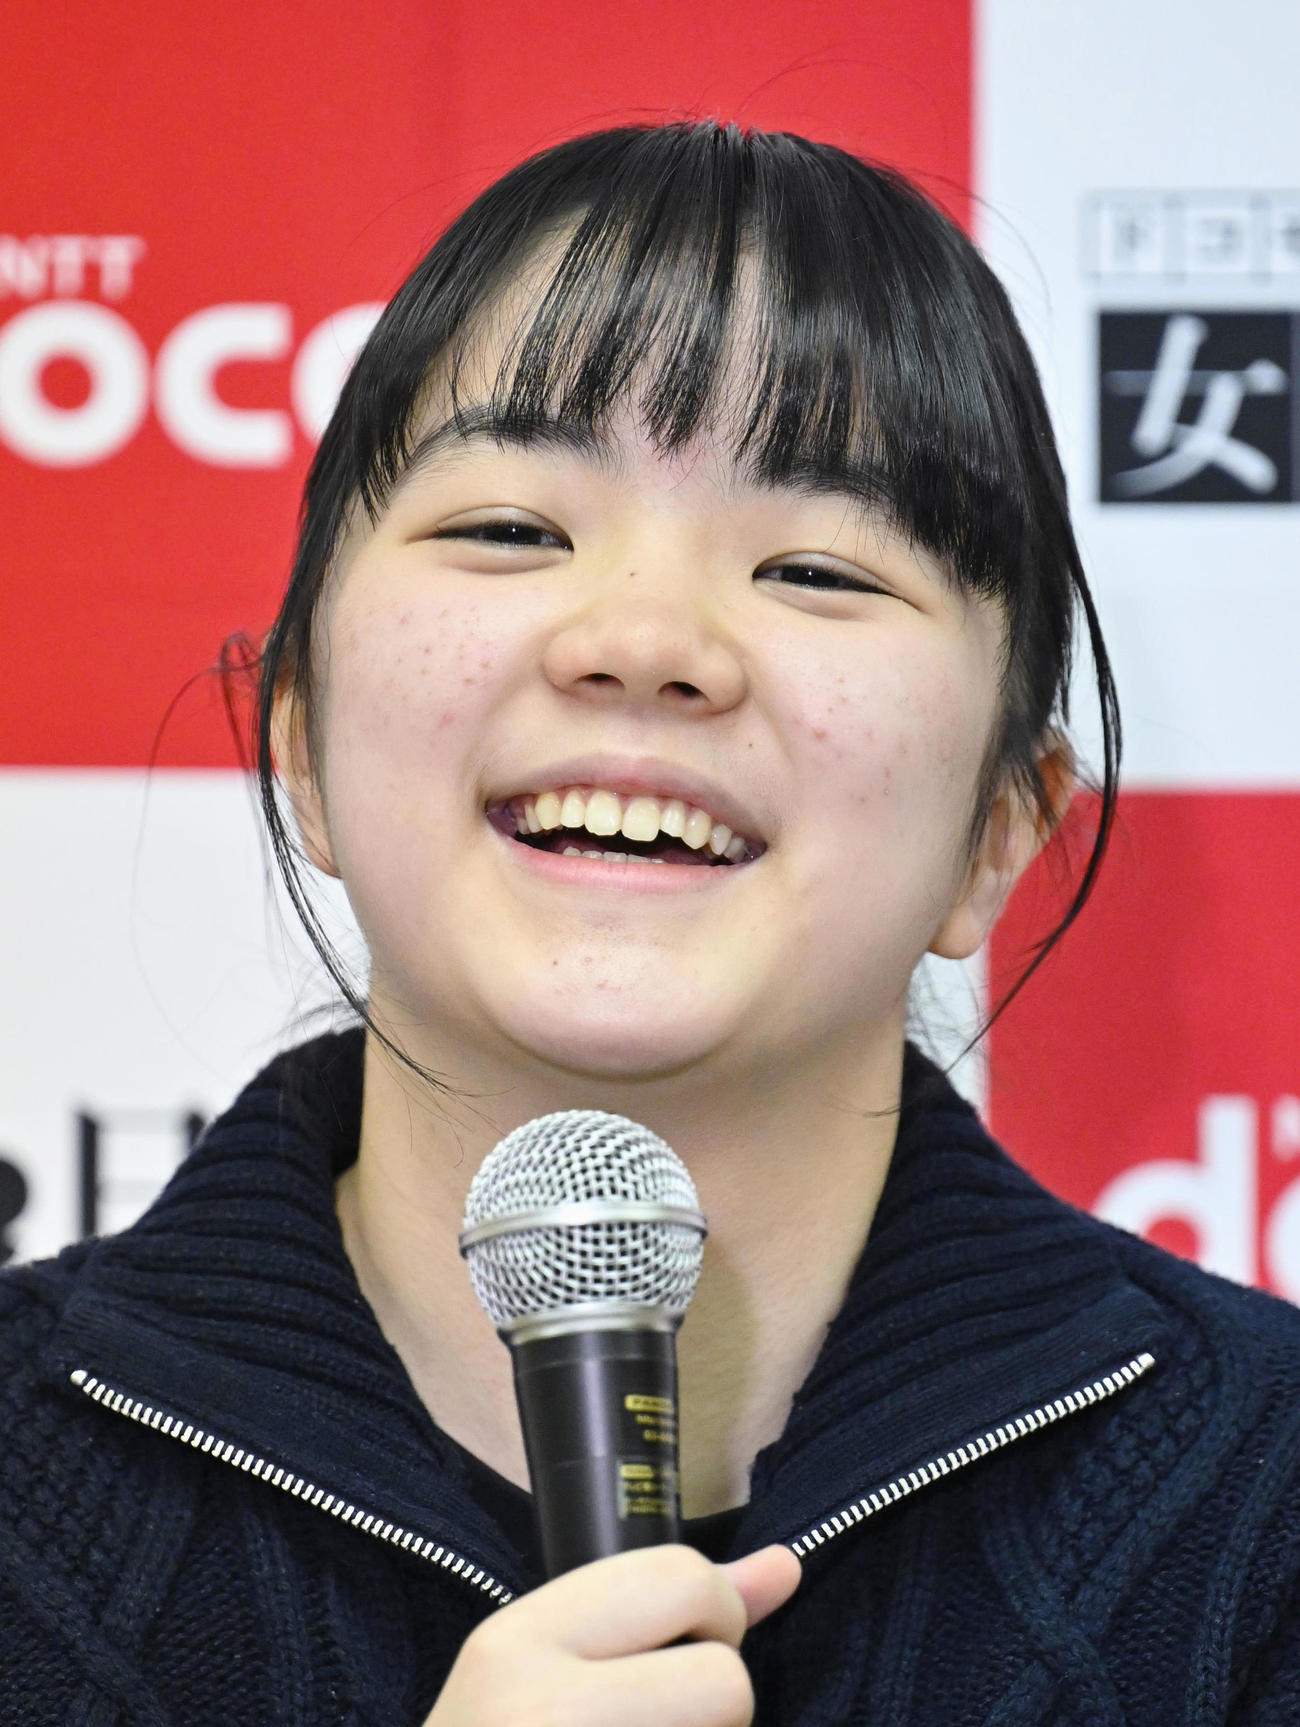 史上最年少13歳11カ月で囲碁の女流棋聖を獲得した仲邑菫三段は会見で笑顔